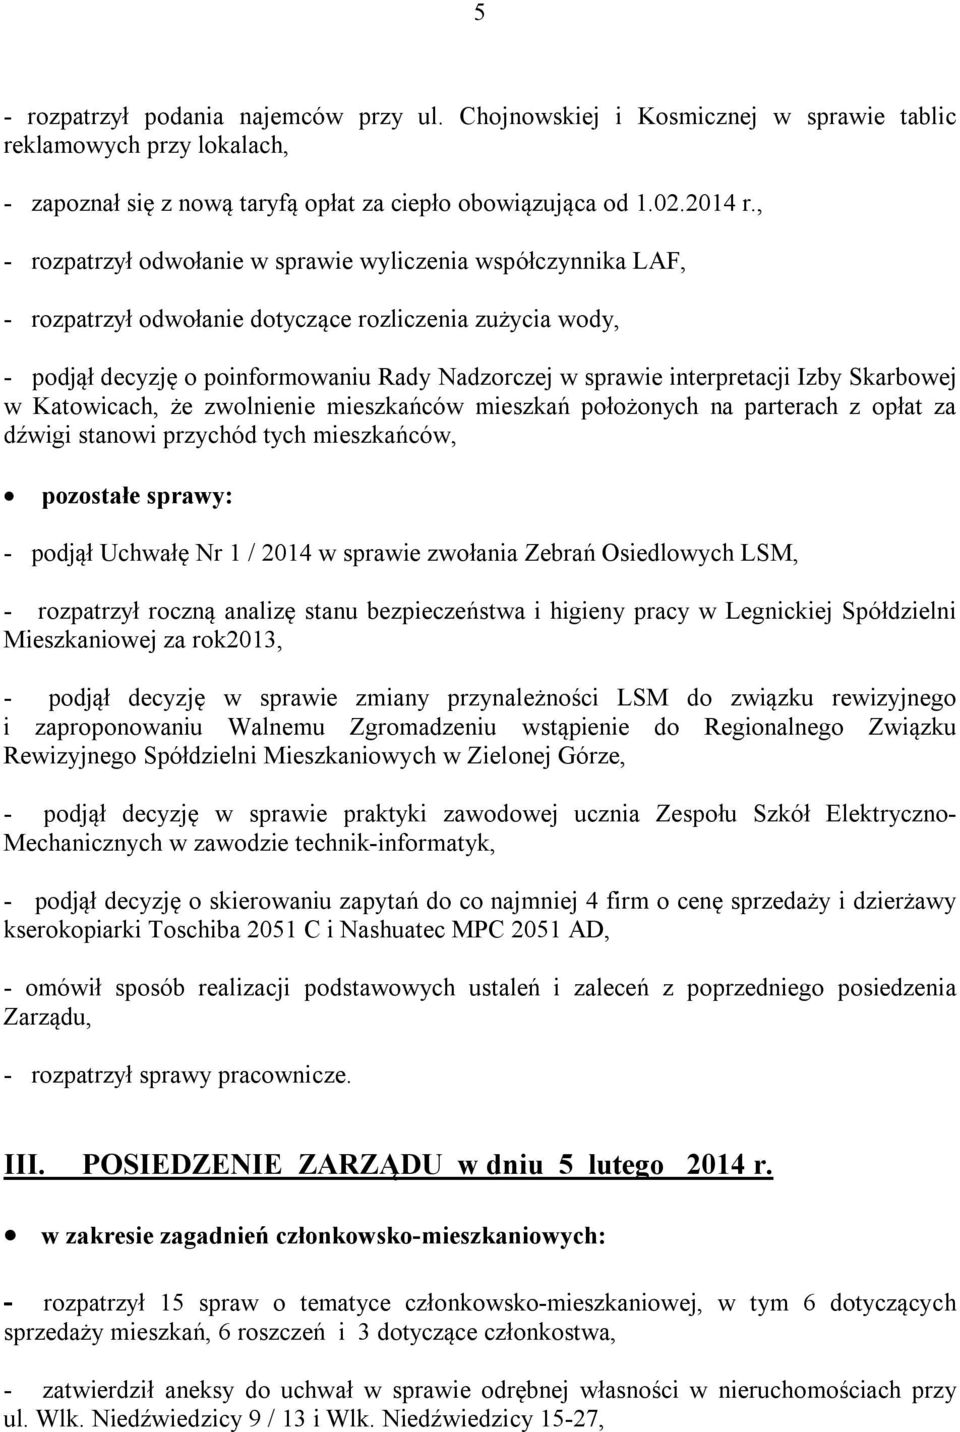 Izby Skarbowej w Katowicach, że zwolnienie mieszkańców mieszkań położonych na parterach z opłat za dźwigi stanowi przychód tych mieszkańców, pozostałe sprawy: - podjął Uchwałę Nr 1 / 2014 w sprawie